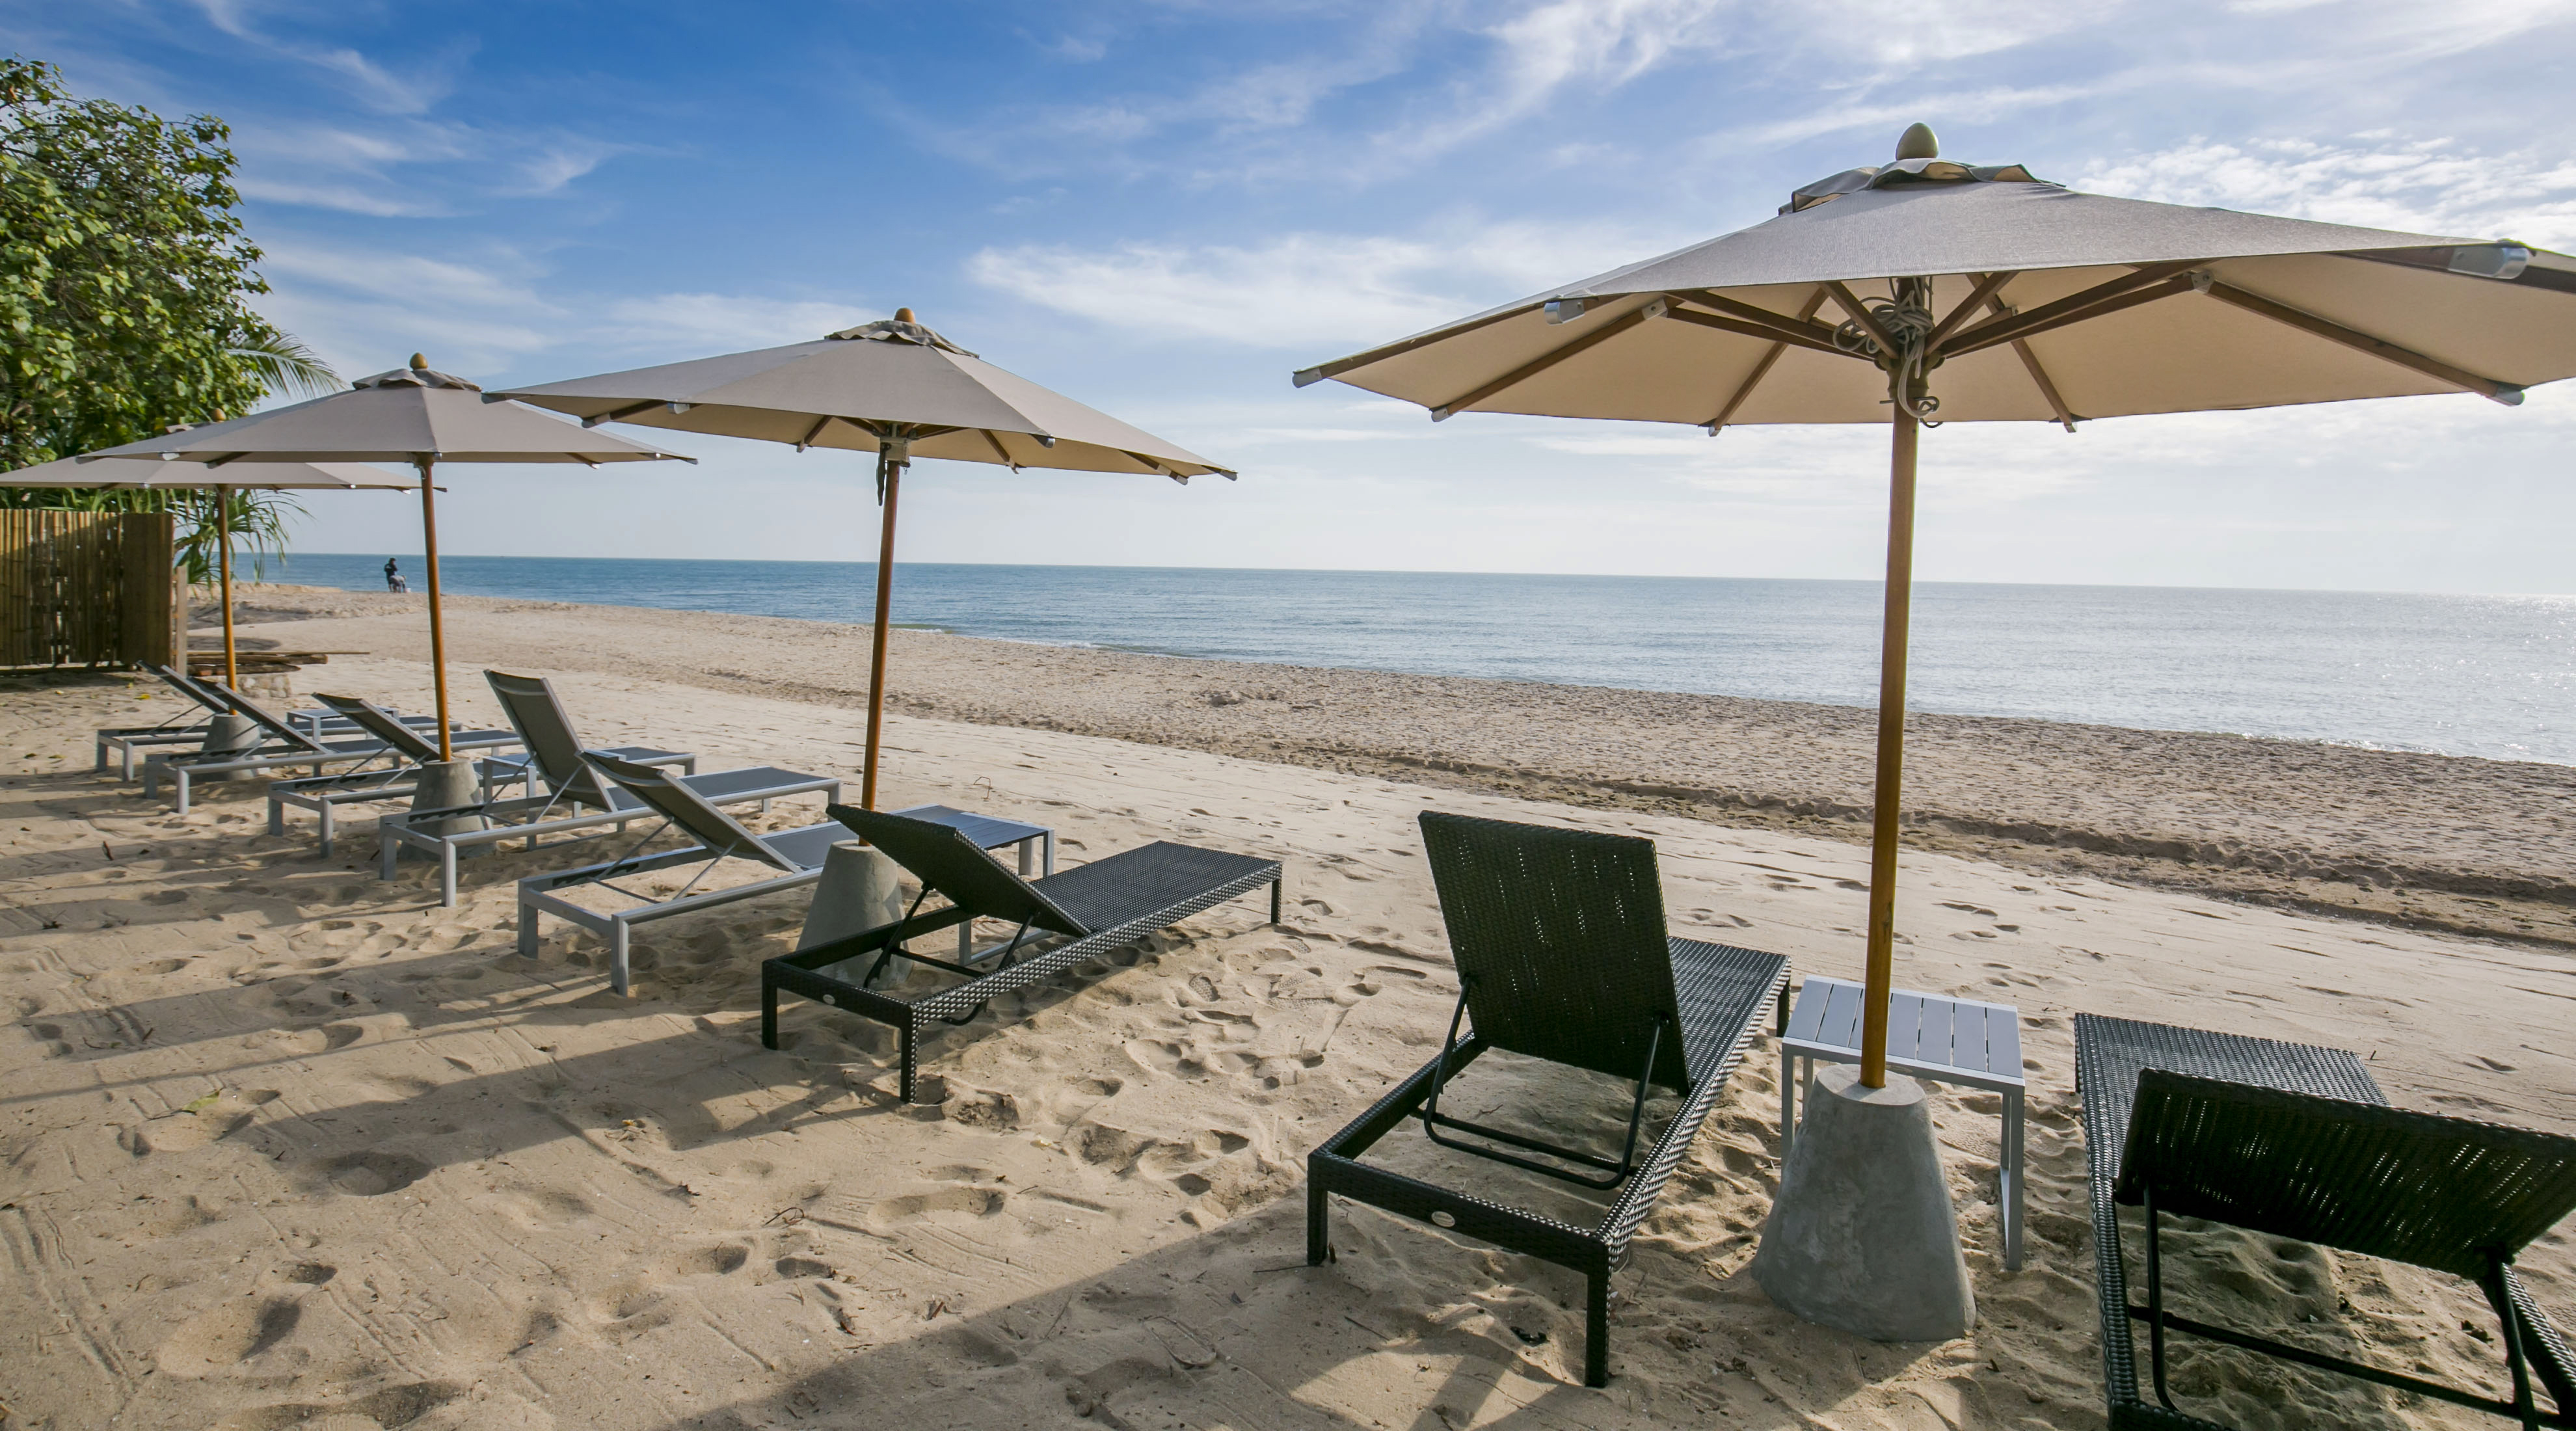 Foto de Q Seaside Huahin Beach - lugar popular entre los conocedores del relax